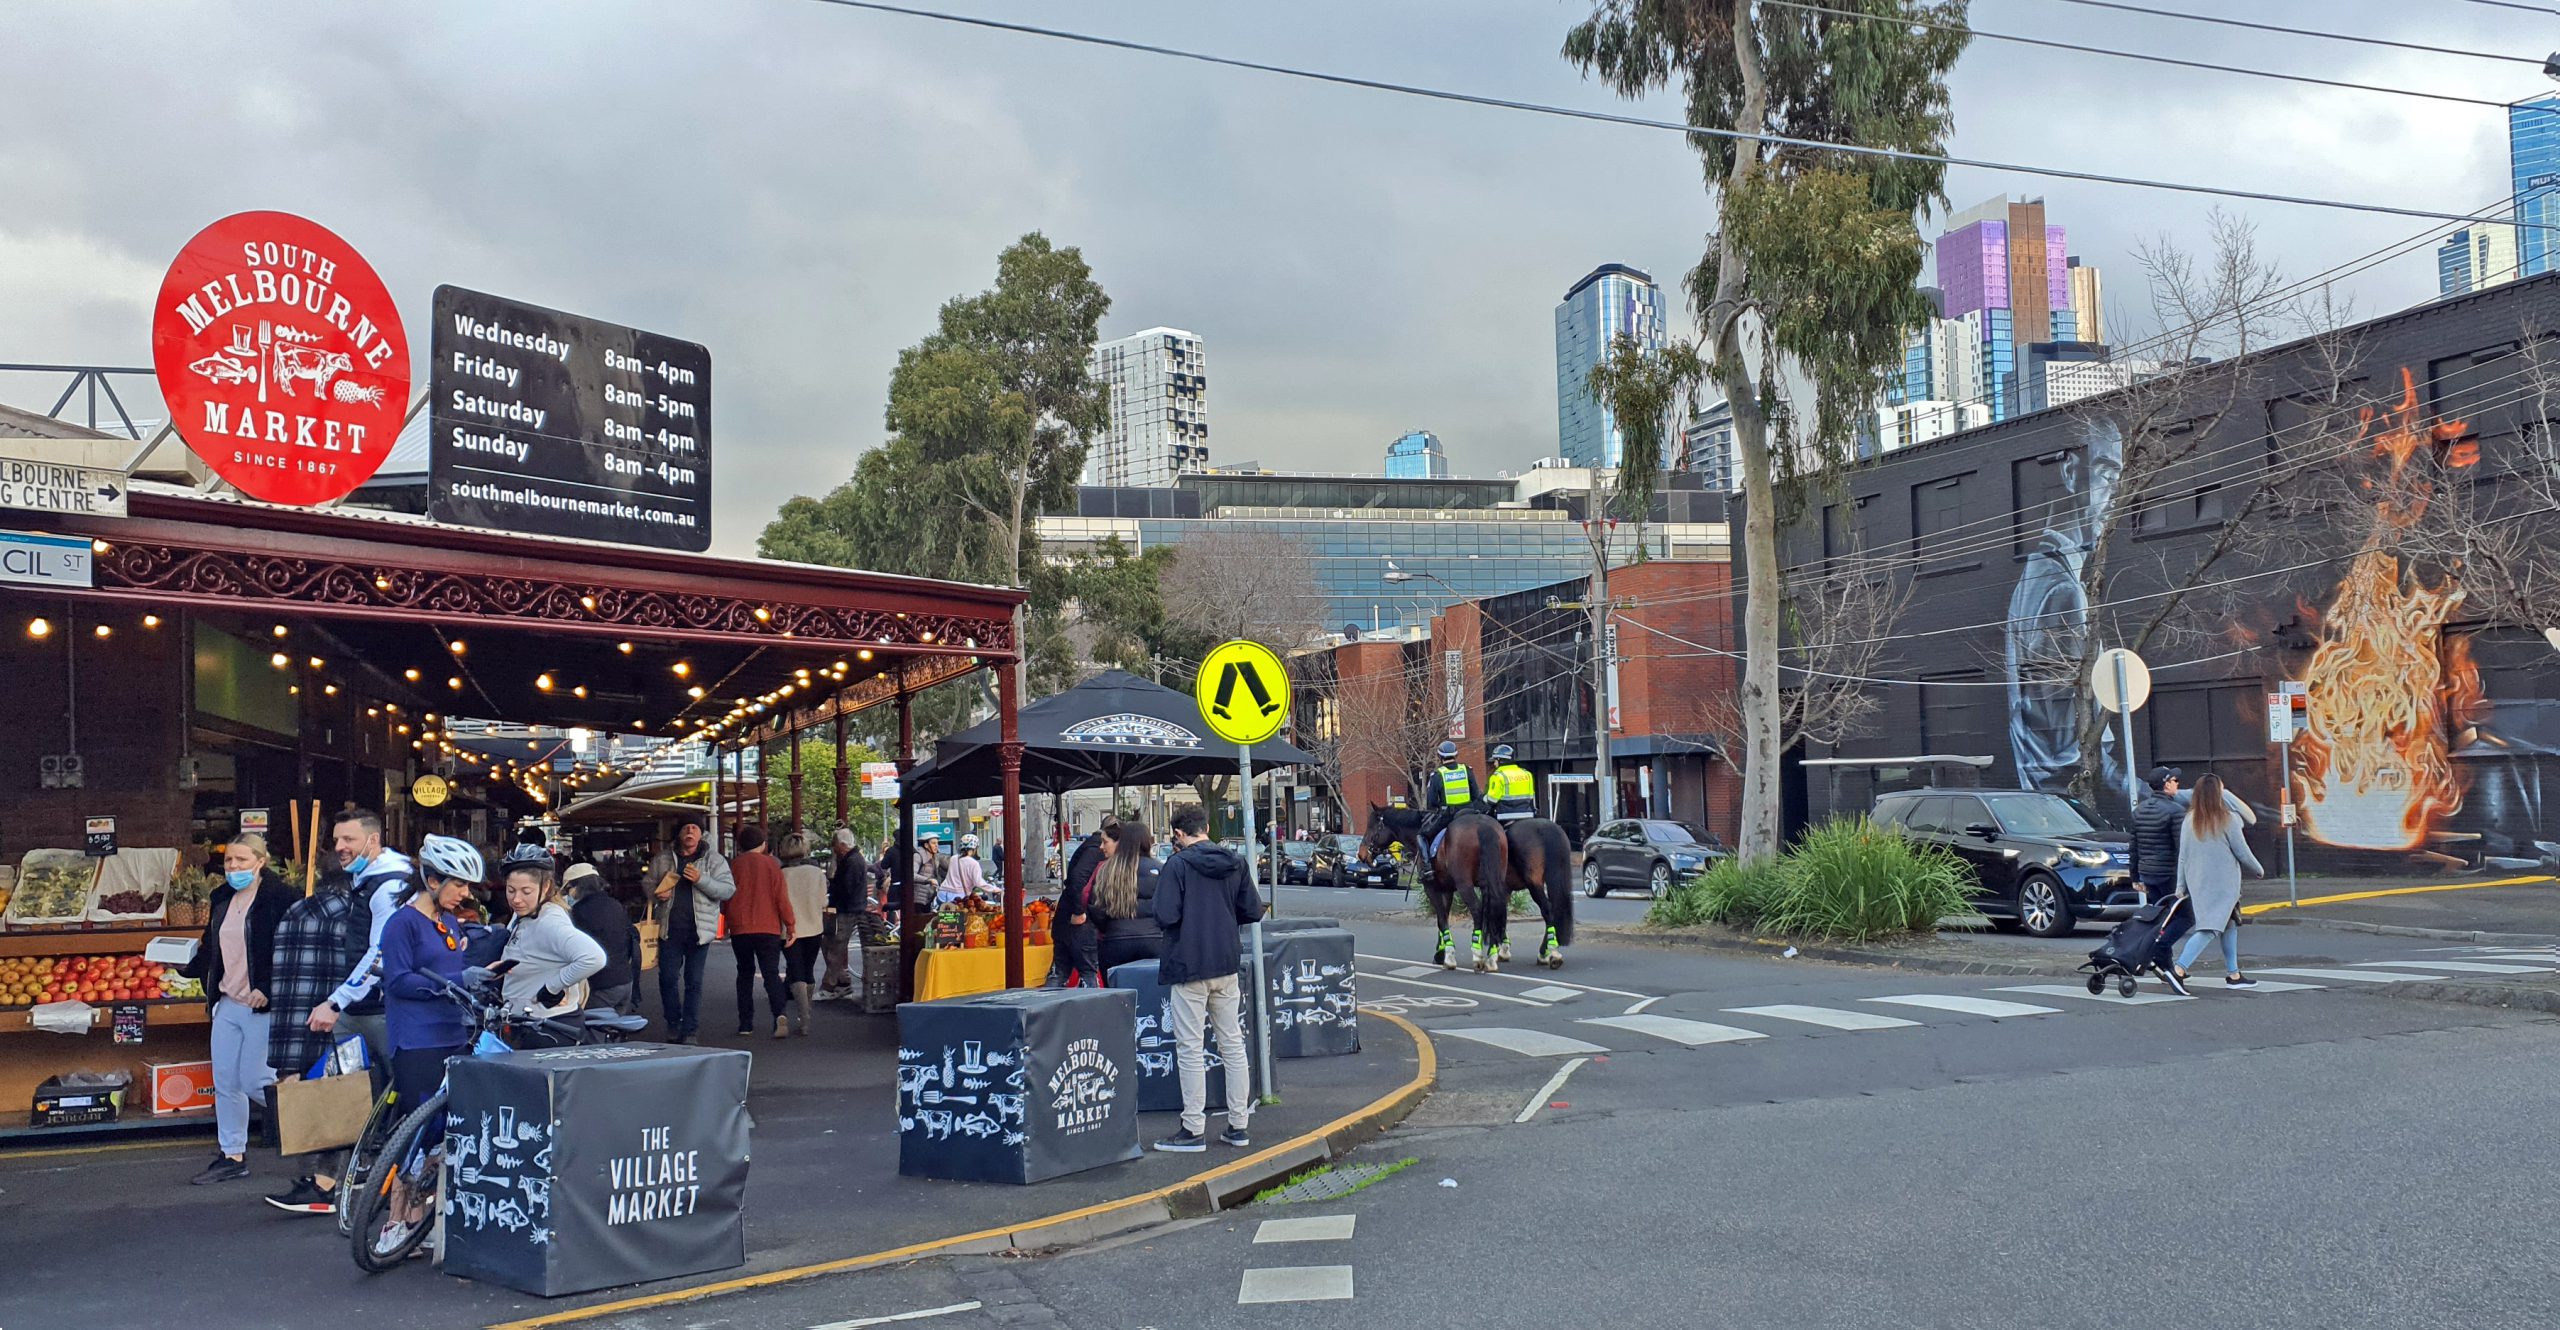 Boczne wejście na market South Melbourne